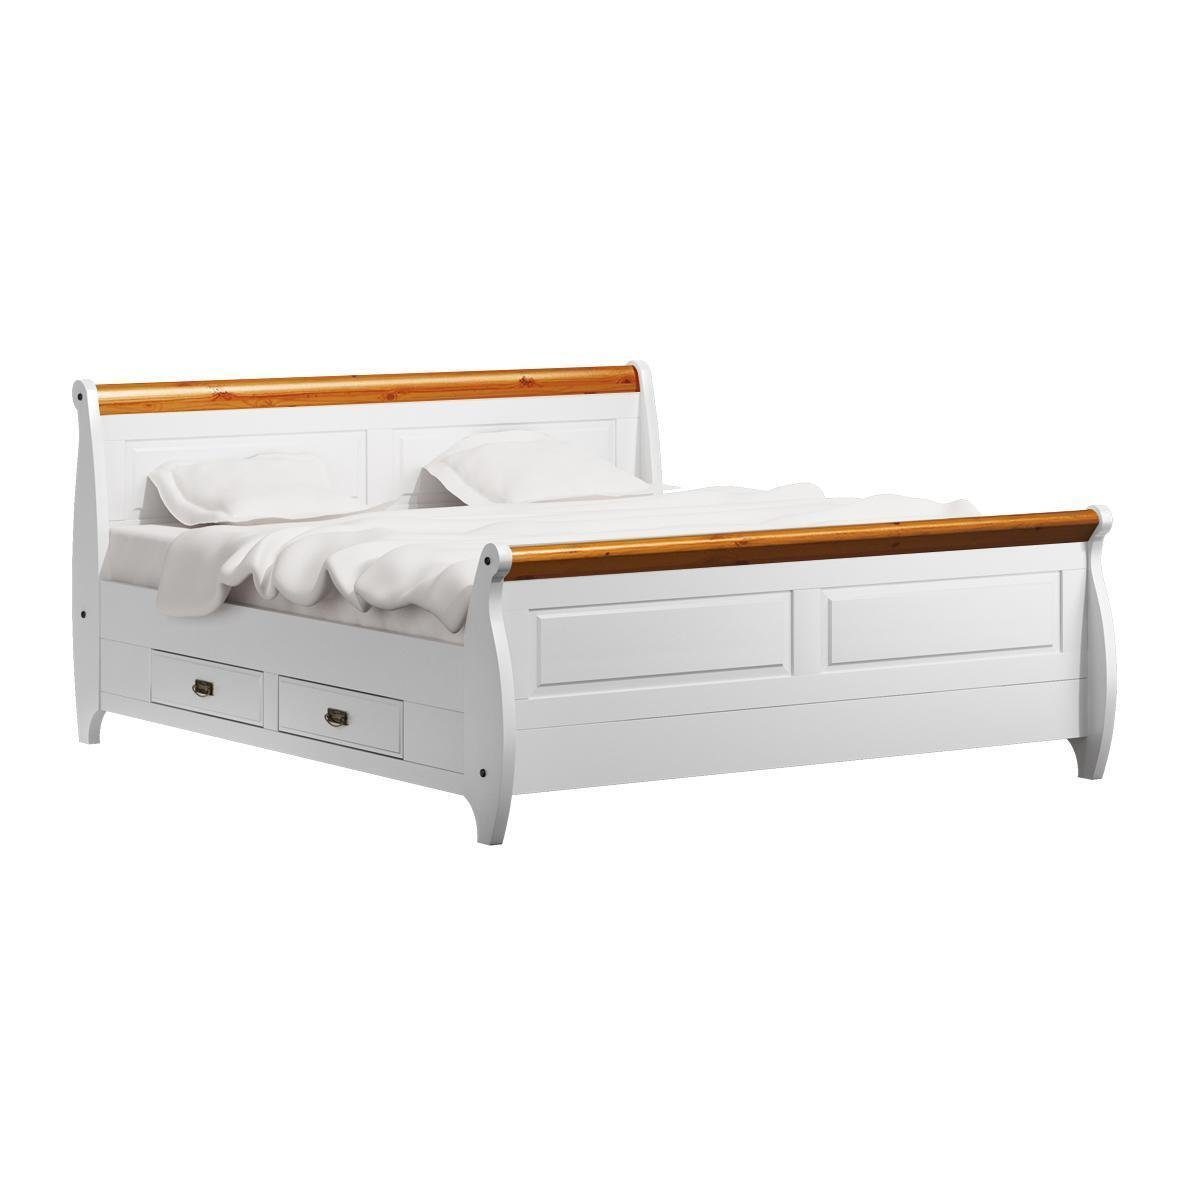 JVmoebel Bett Luxus Bett Doppelbett Landhaus Stil Doppelbetten Weiß Bauern Betten | Bettgestelle